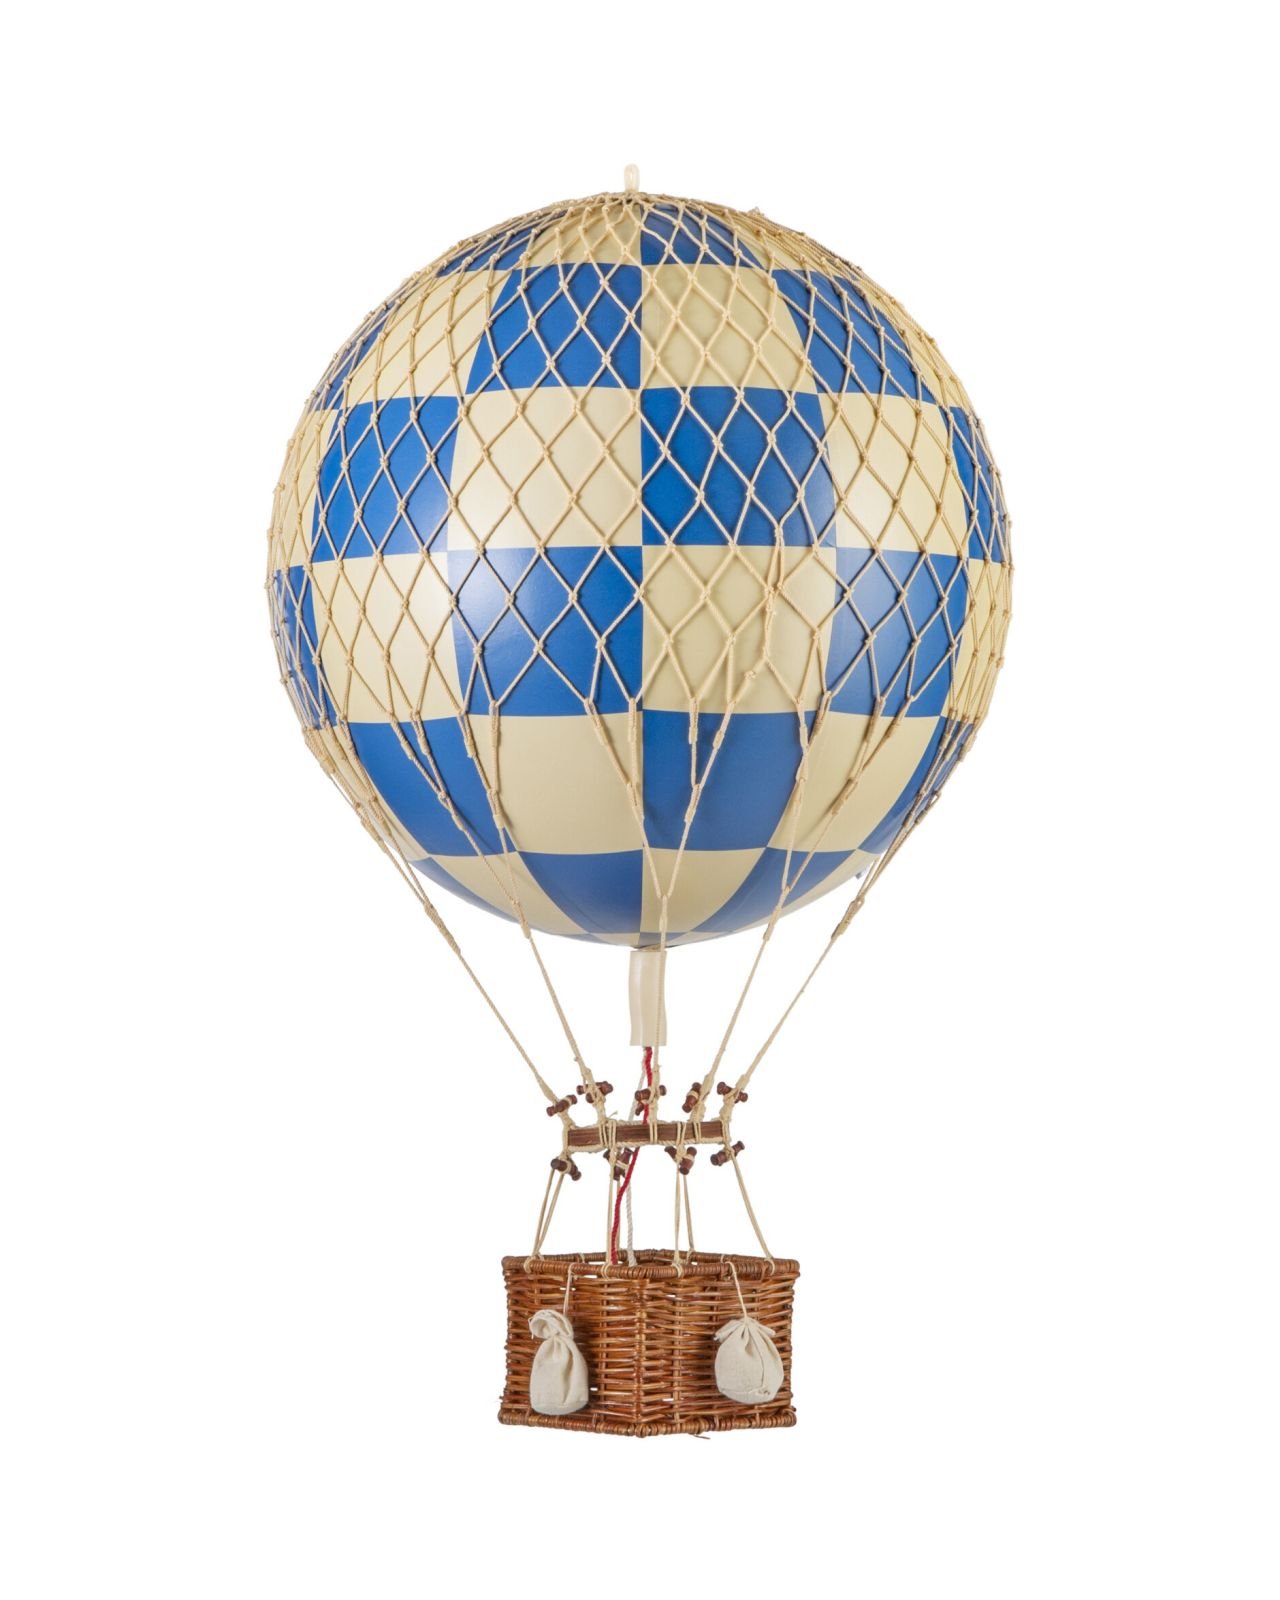 Royal Aero balloon check blue